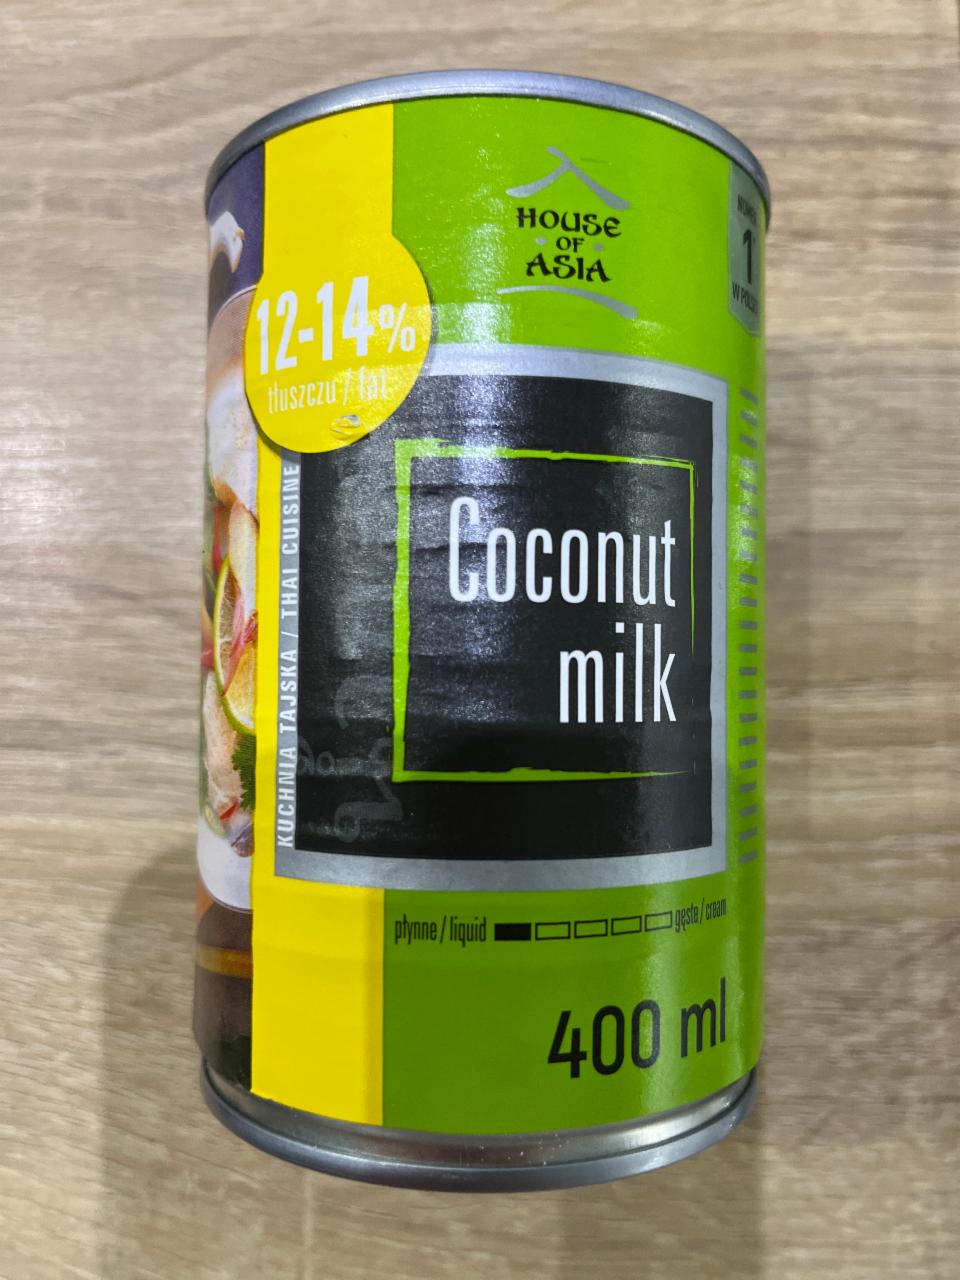 Фото - Молоко кокосове 12-14% Coconut Milk House of Asia